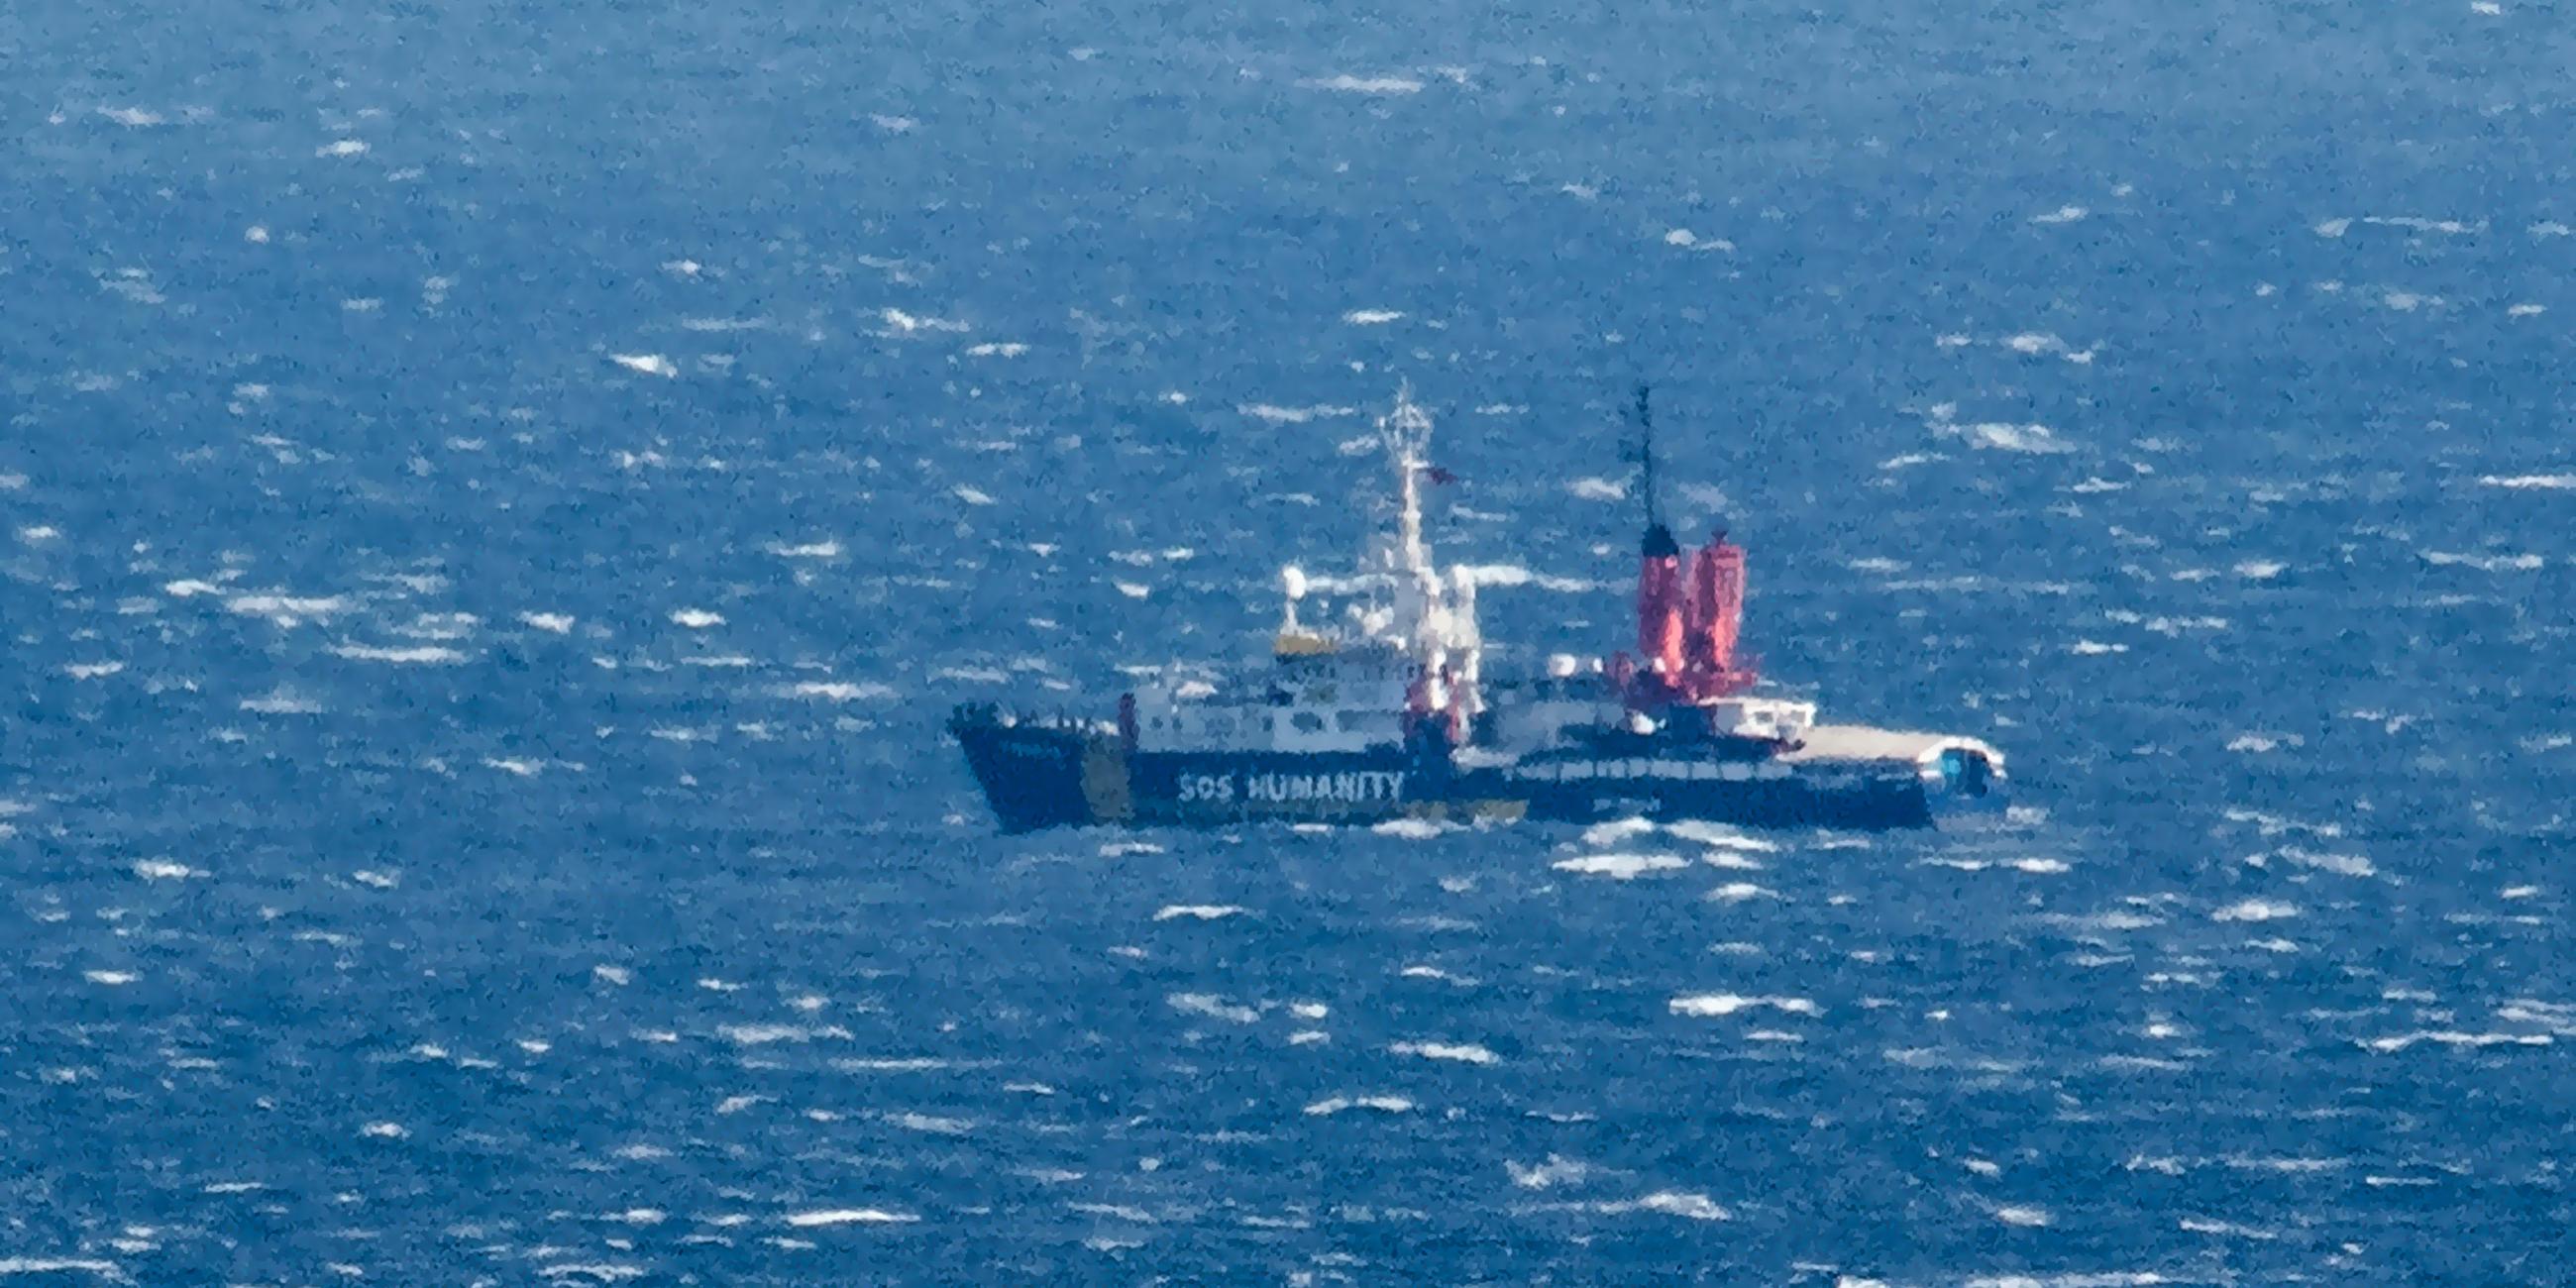 Italien, Aci Reale: Das von der SOS Humanity, einer Organisation aus Deutschland, betriebene Rettungsschiff SOS Humanity 1 ist auf See vor der Küste zu sehen.